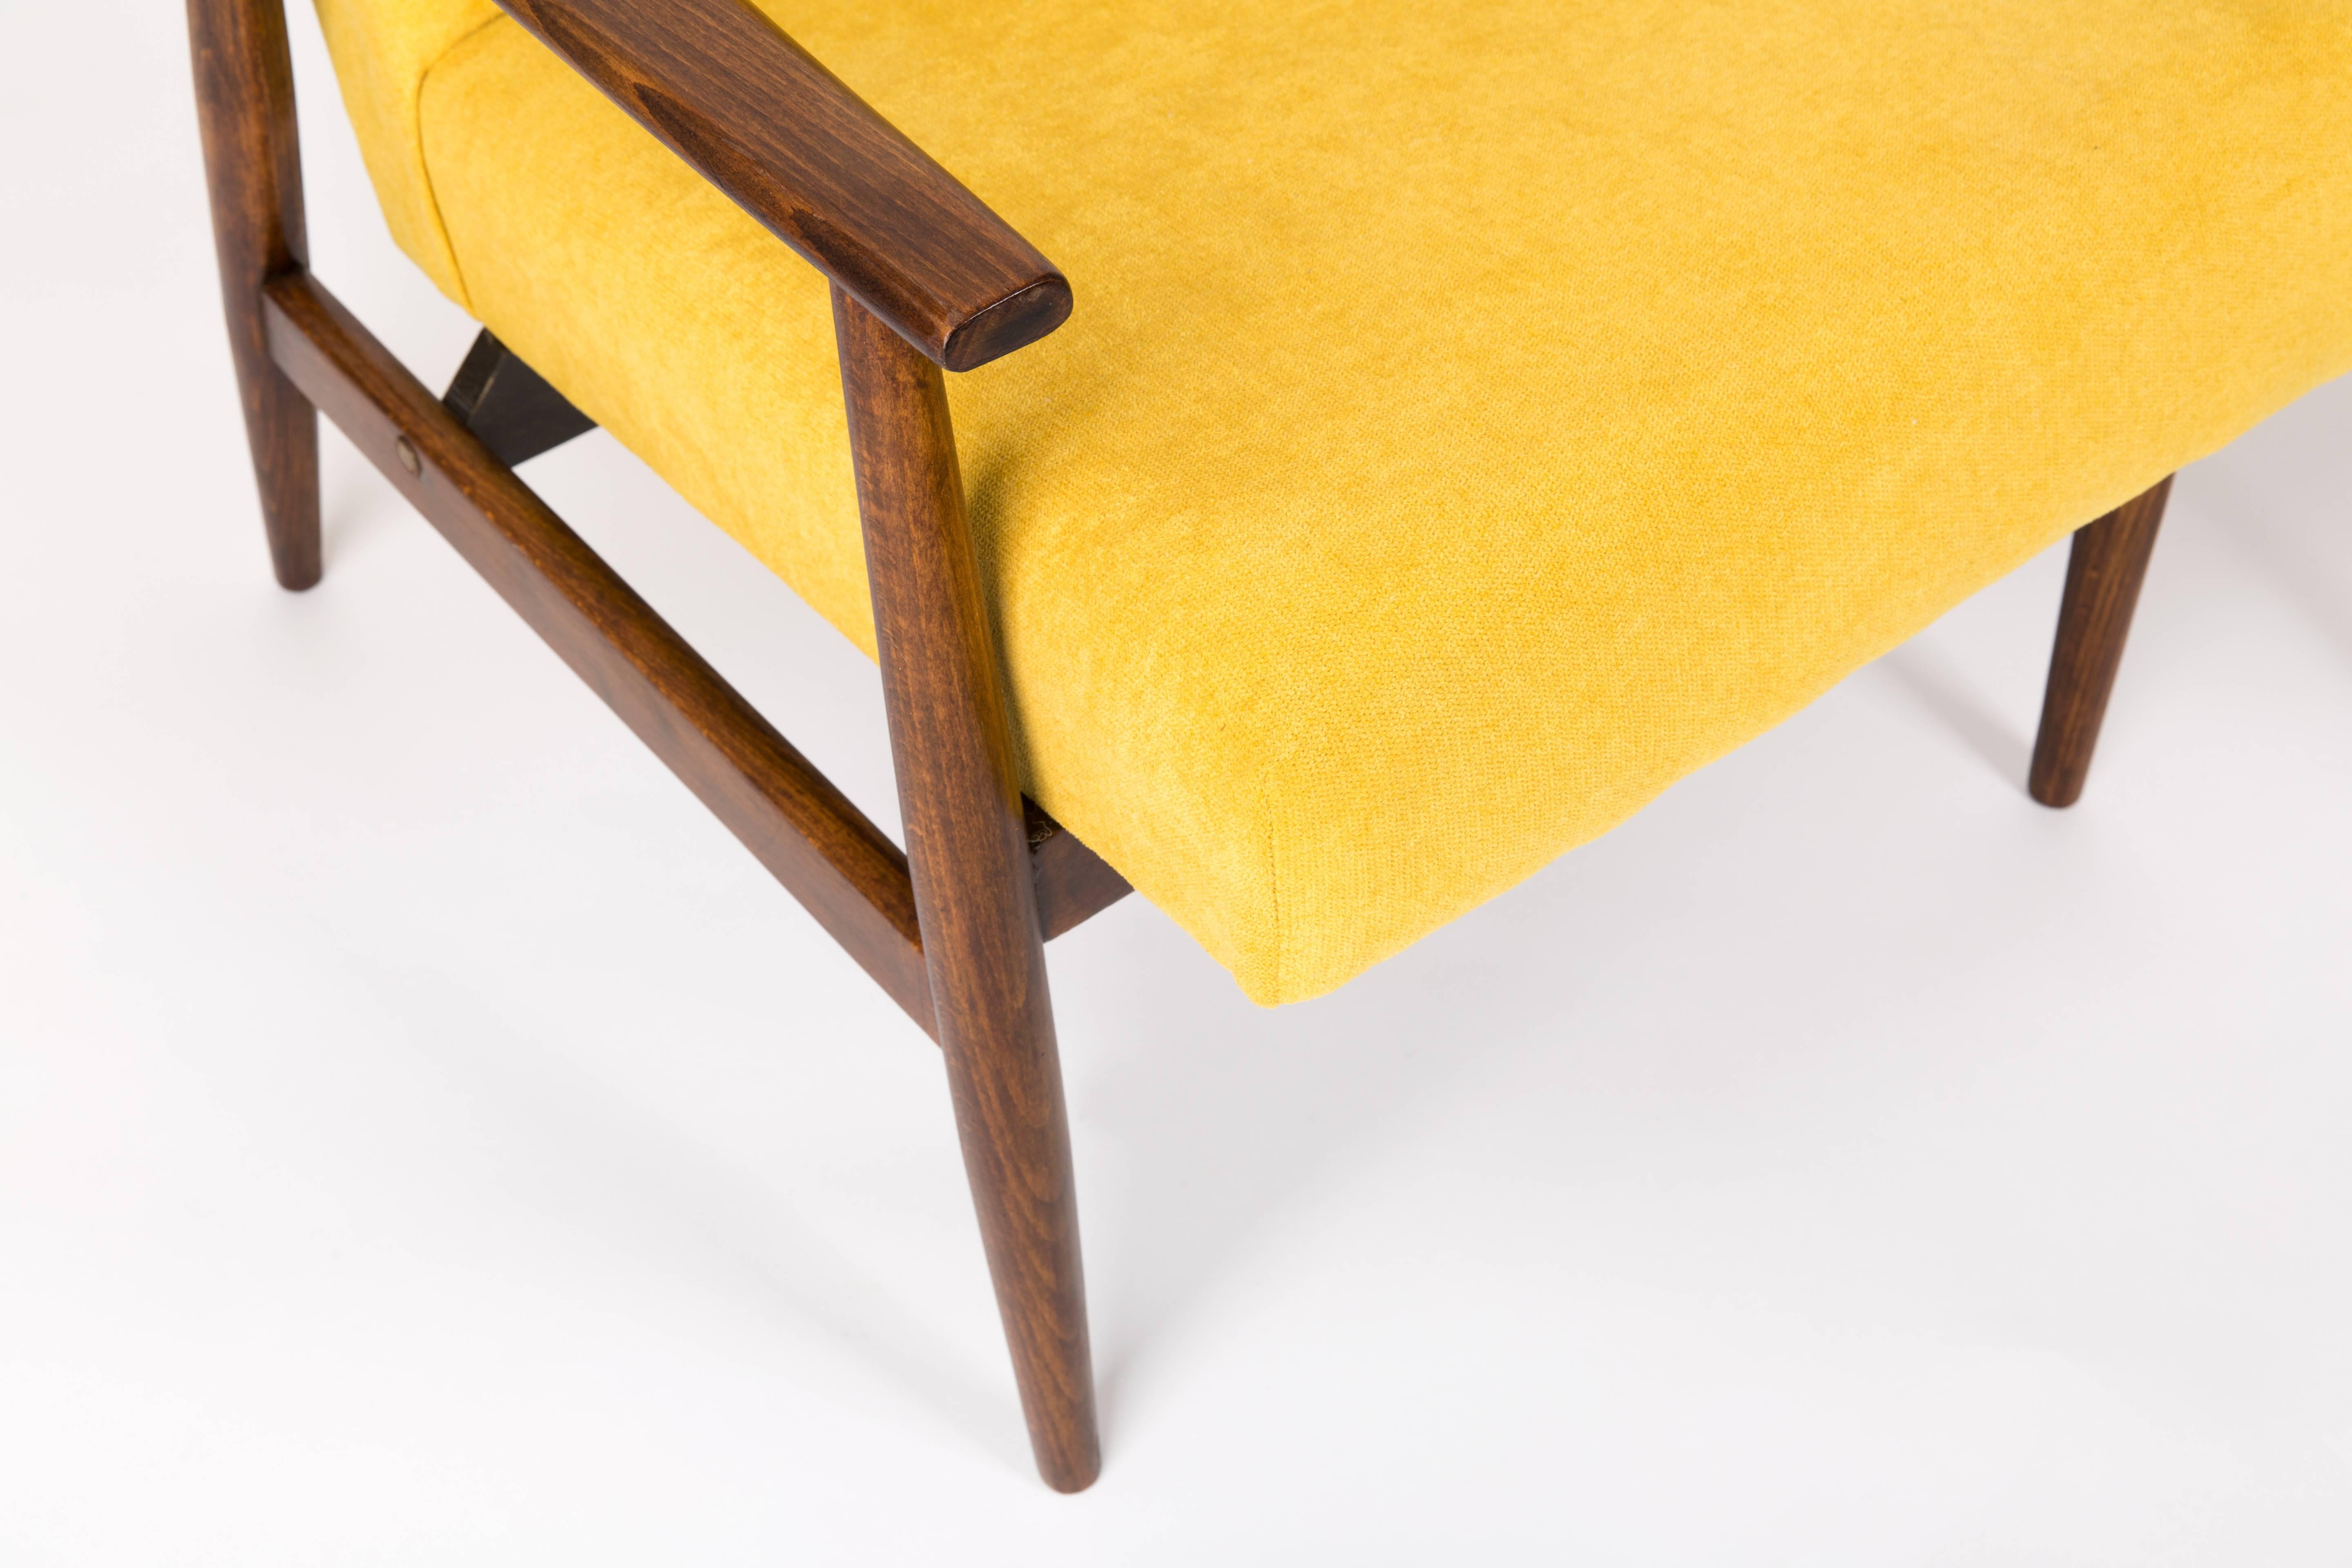 Ein schöner, restaurierter Sessel, entworfen von Henryk Lis. Möbel nach kompletter Renovierung durch Schreiner und Polsterei. Der Stoff, der mit einer Rückenlehne und einer Sitzfläche bezogen ist, ist ein hochwertiger Veloursbezug. Die Sessel passen